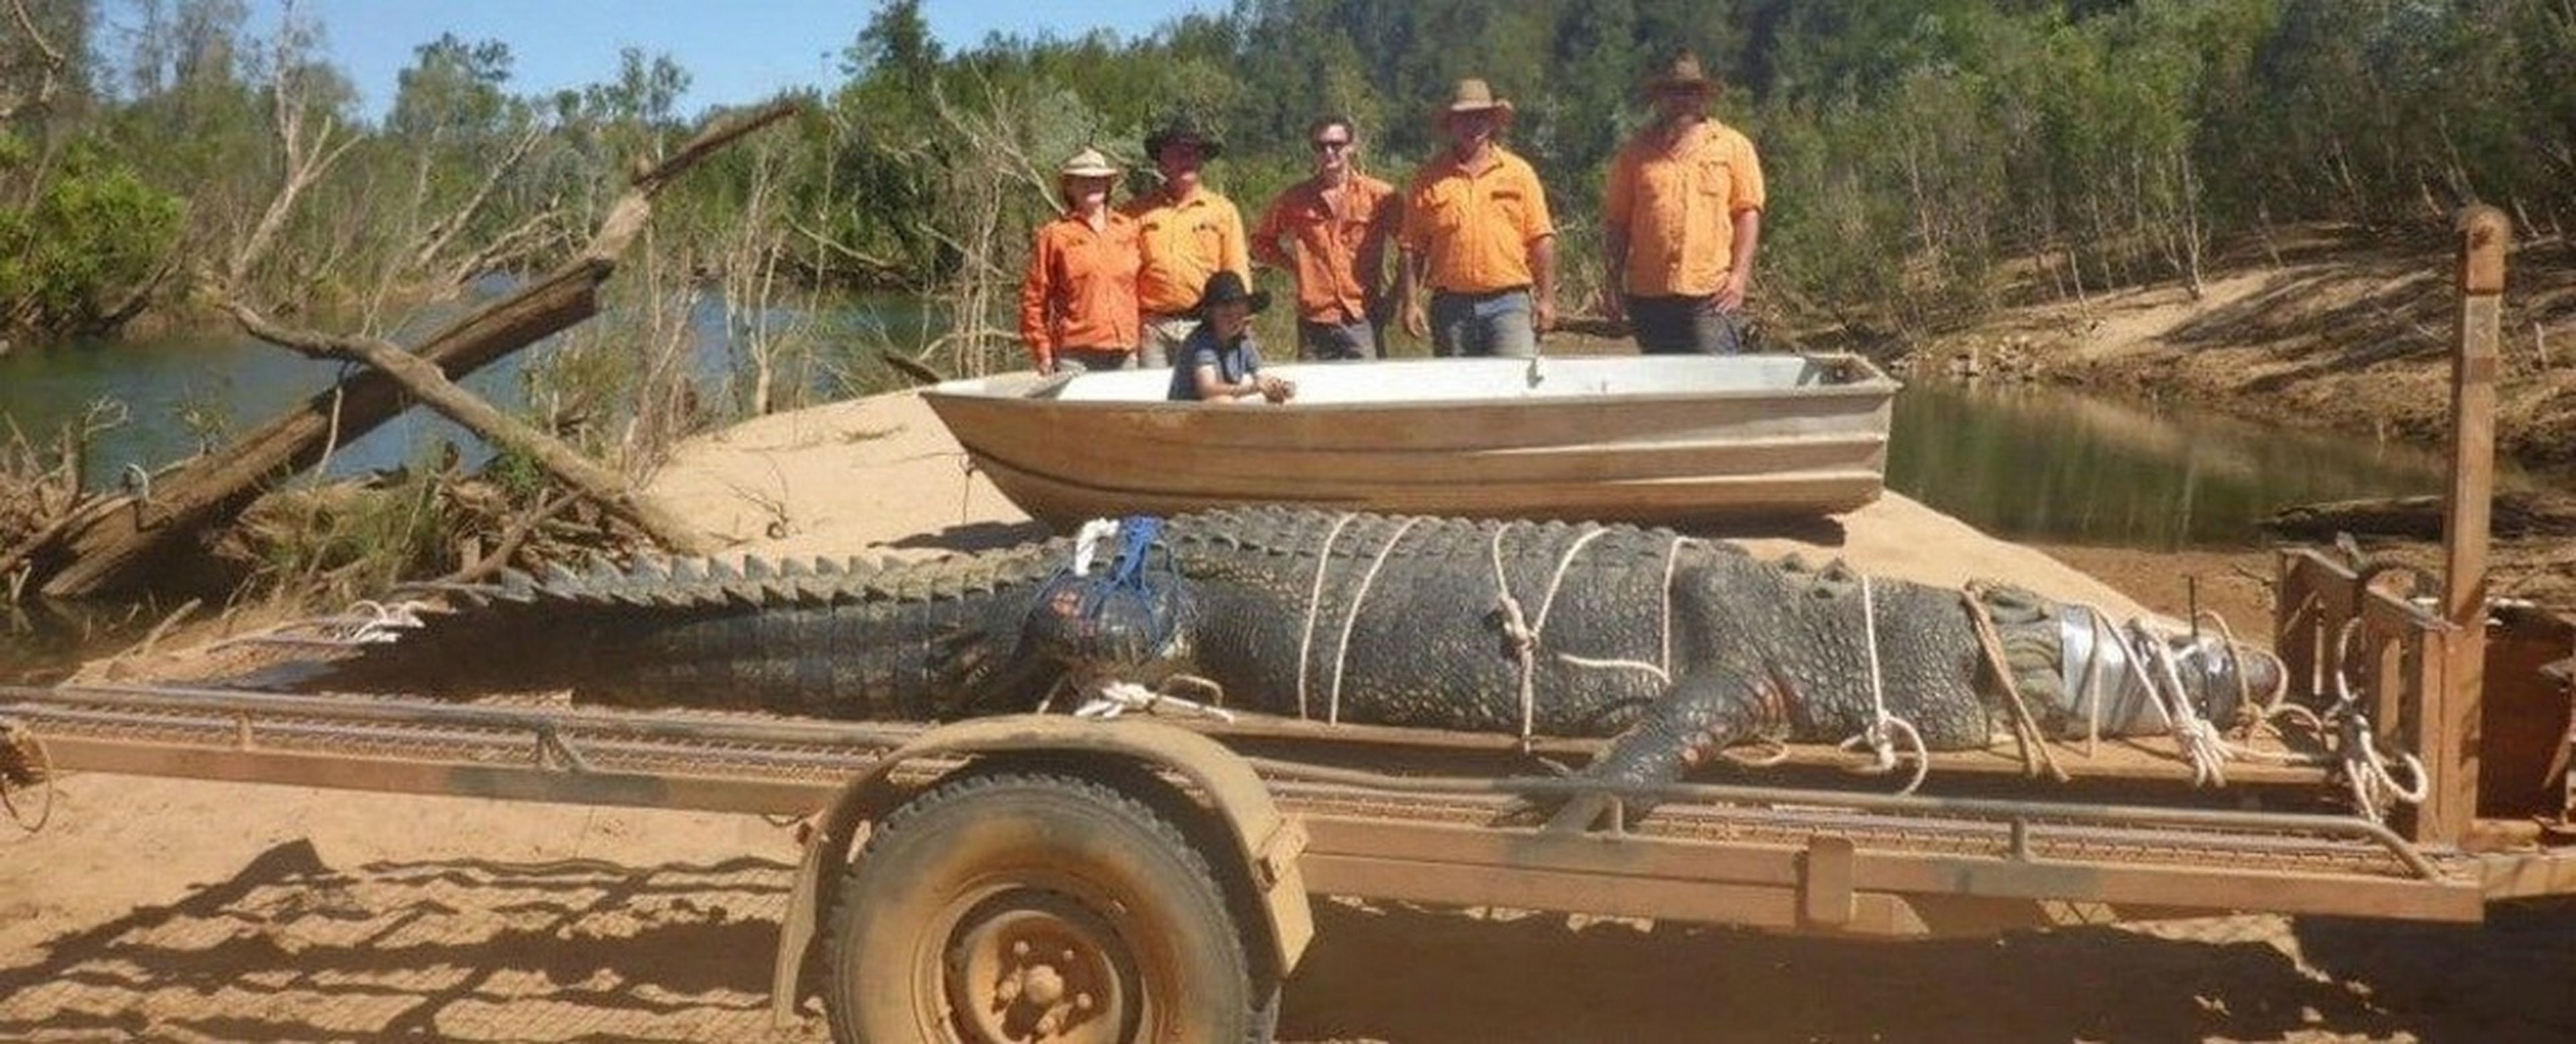 Tras 10 años de persecución, capturan un cocodrilo gigante en Australia